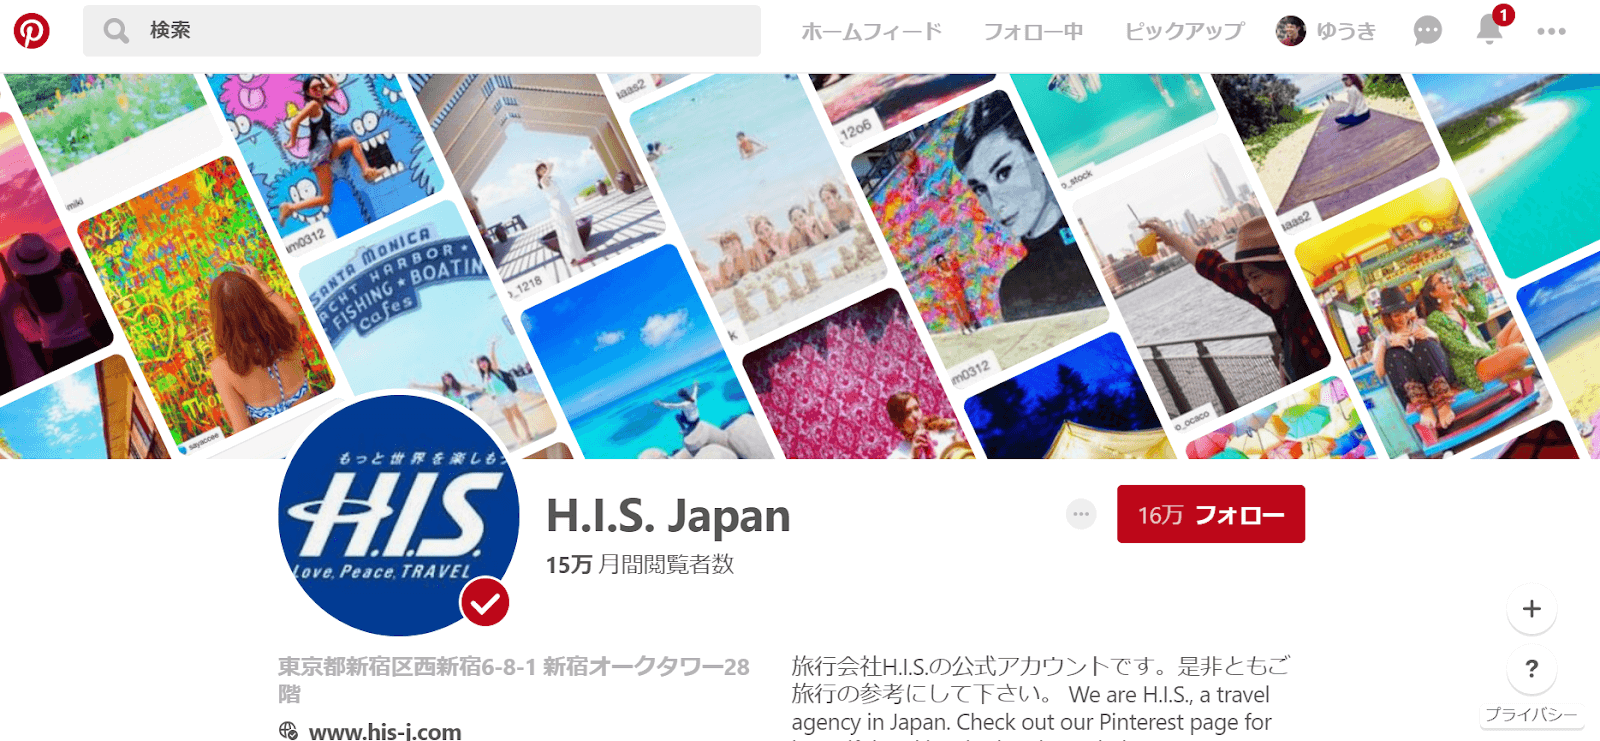 H.I.S.Japan